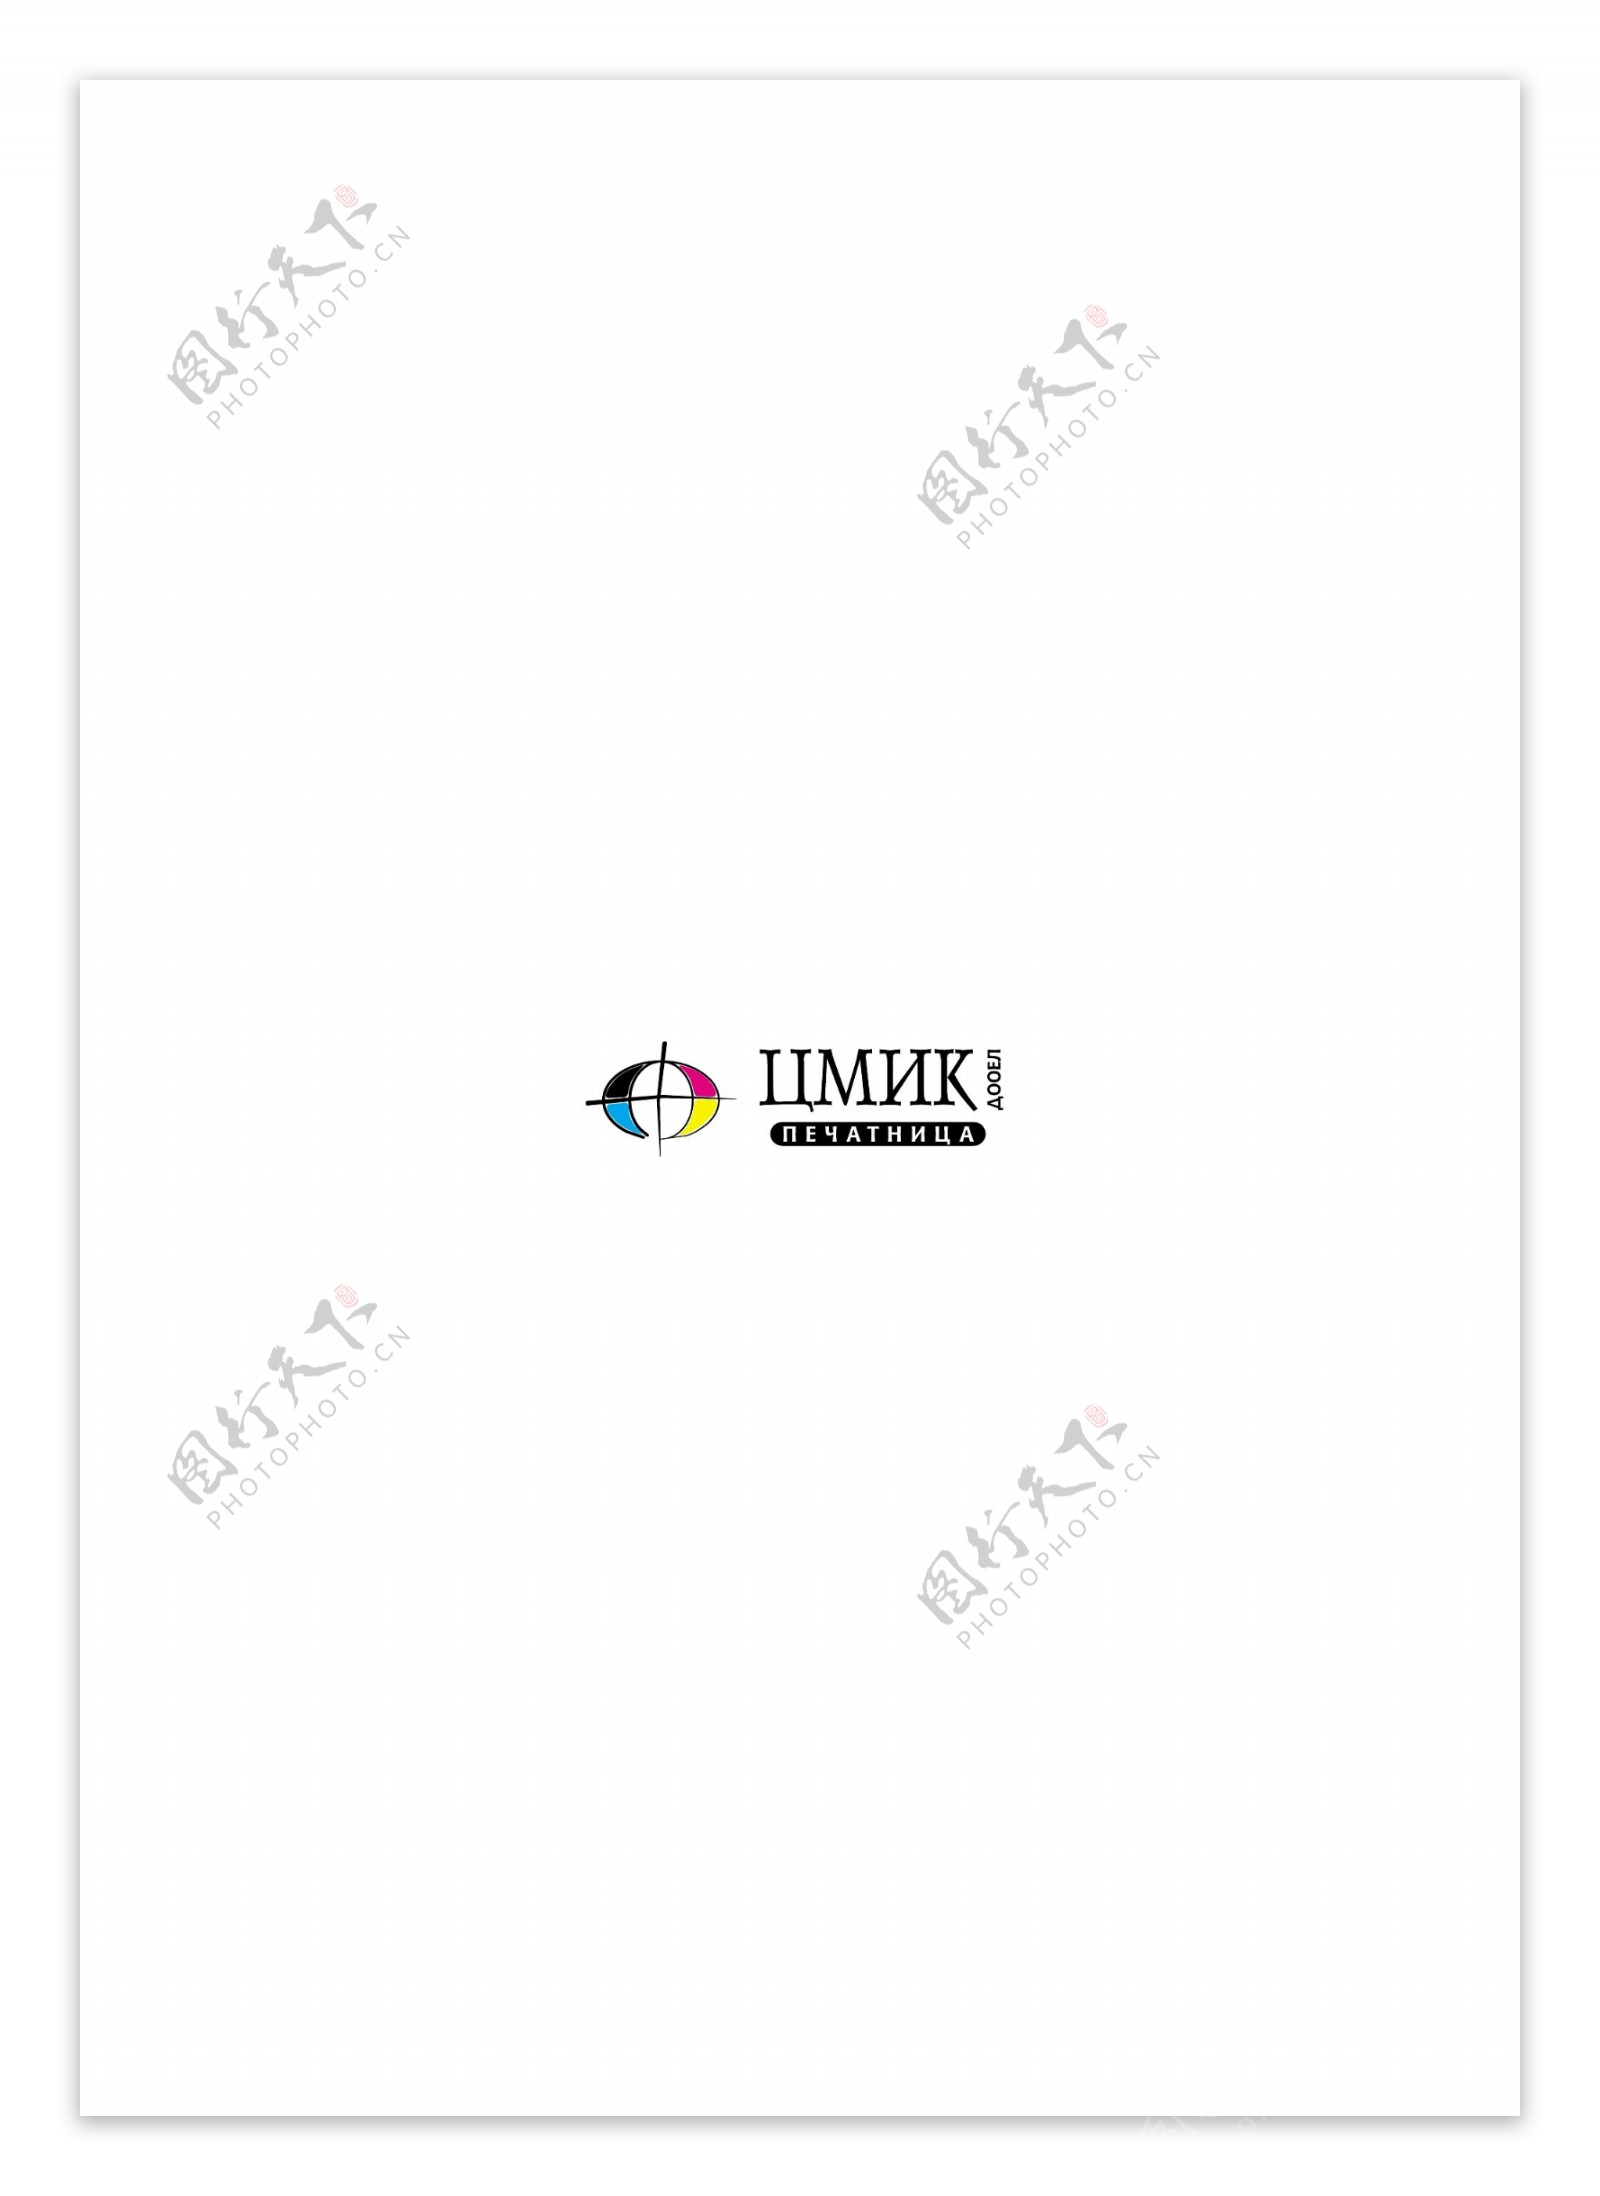 Cmiklogo设计欣赏Cmik服务公司标志下载标志设计欣赏